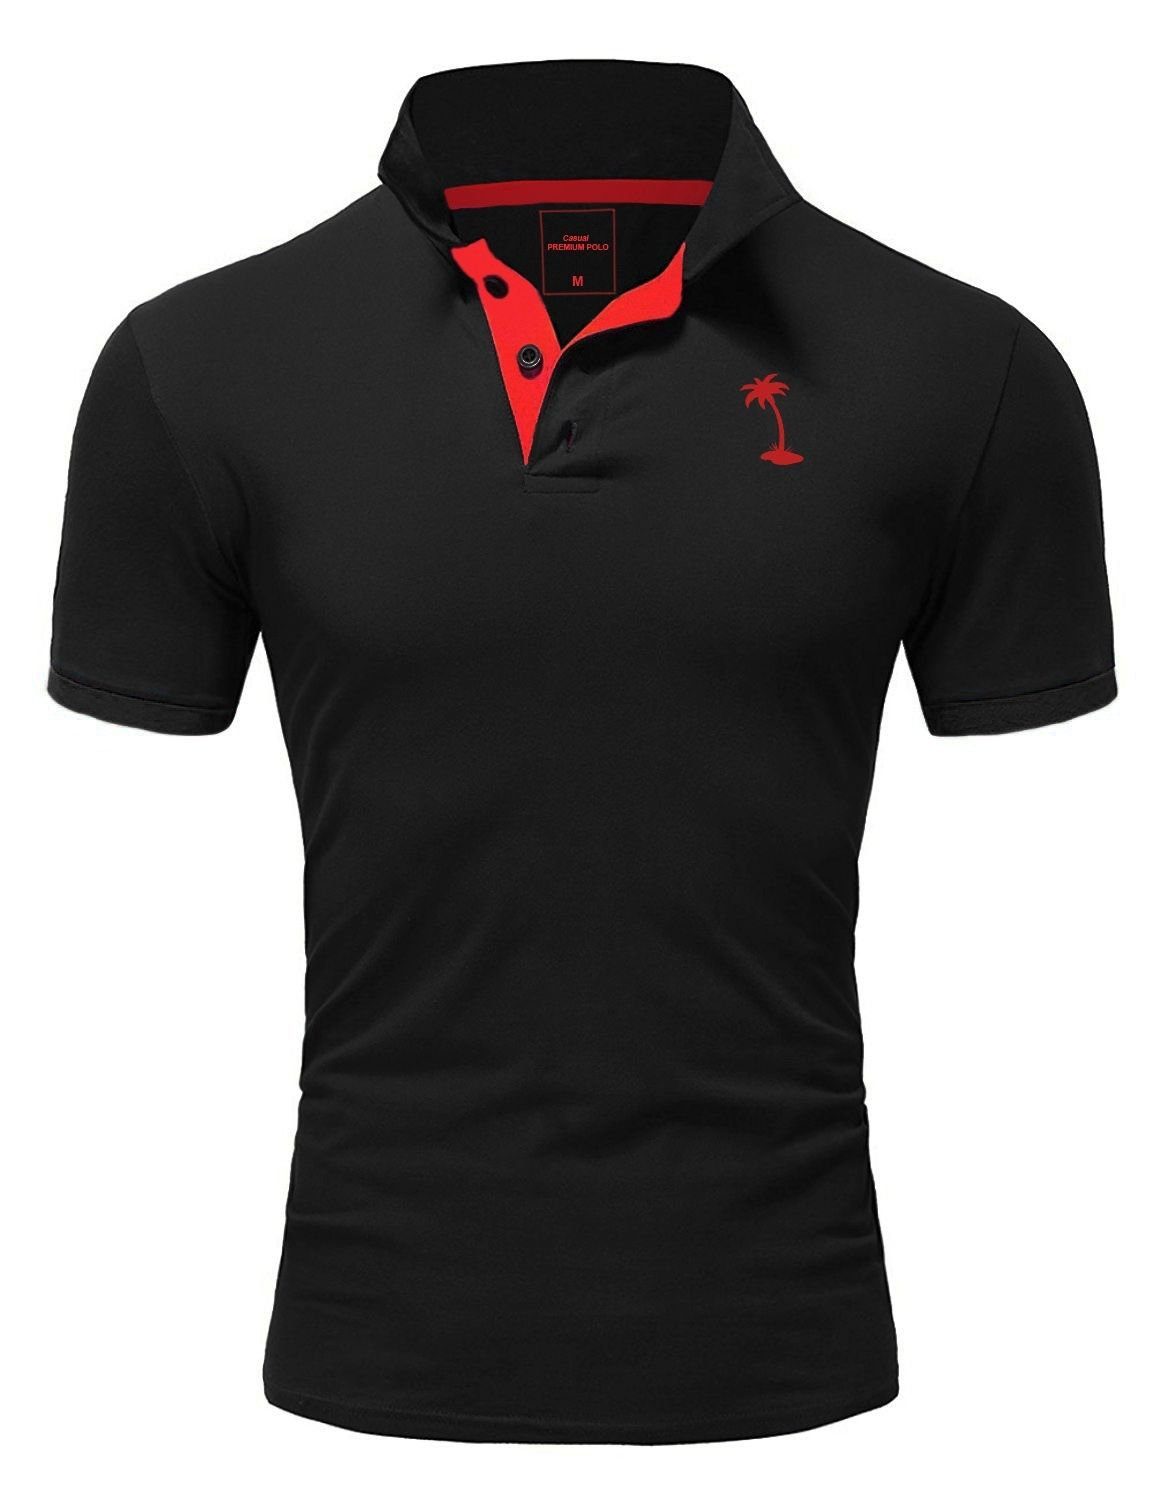 behype Poloshirt PALMSON mit kontrastfarbigen Details schwarz-rot